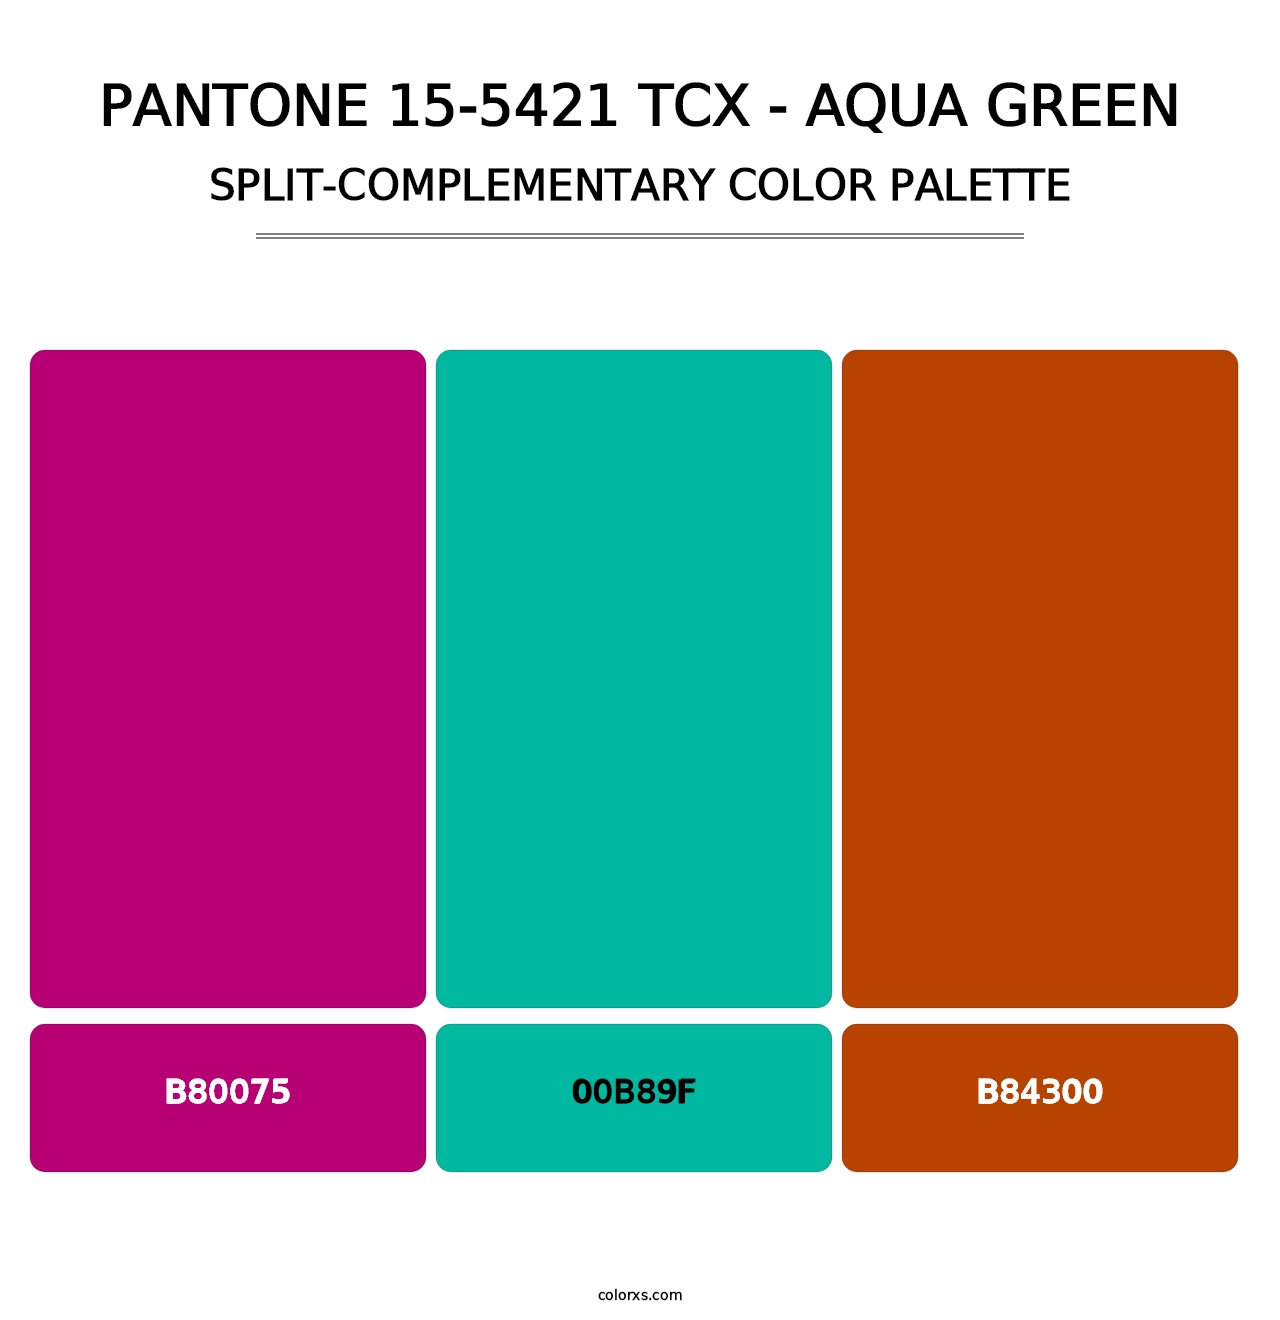 PANTONE 15-5421 TCX - Aqua Green - Split-Complementary Color Palette